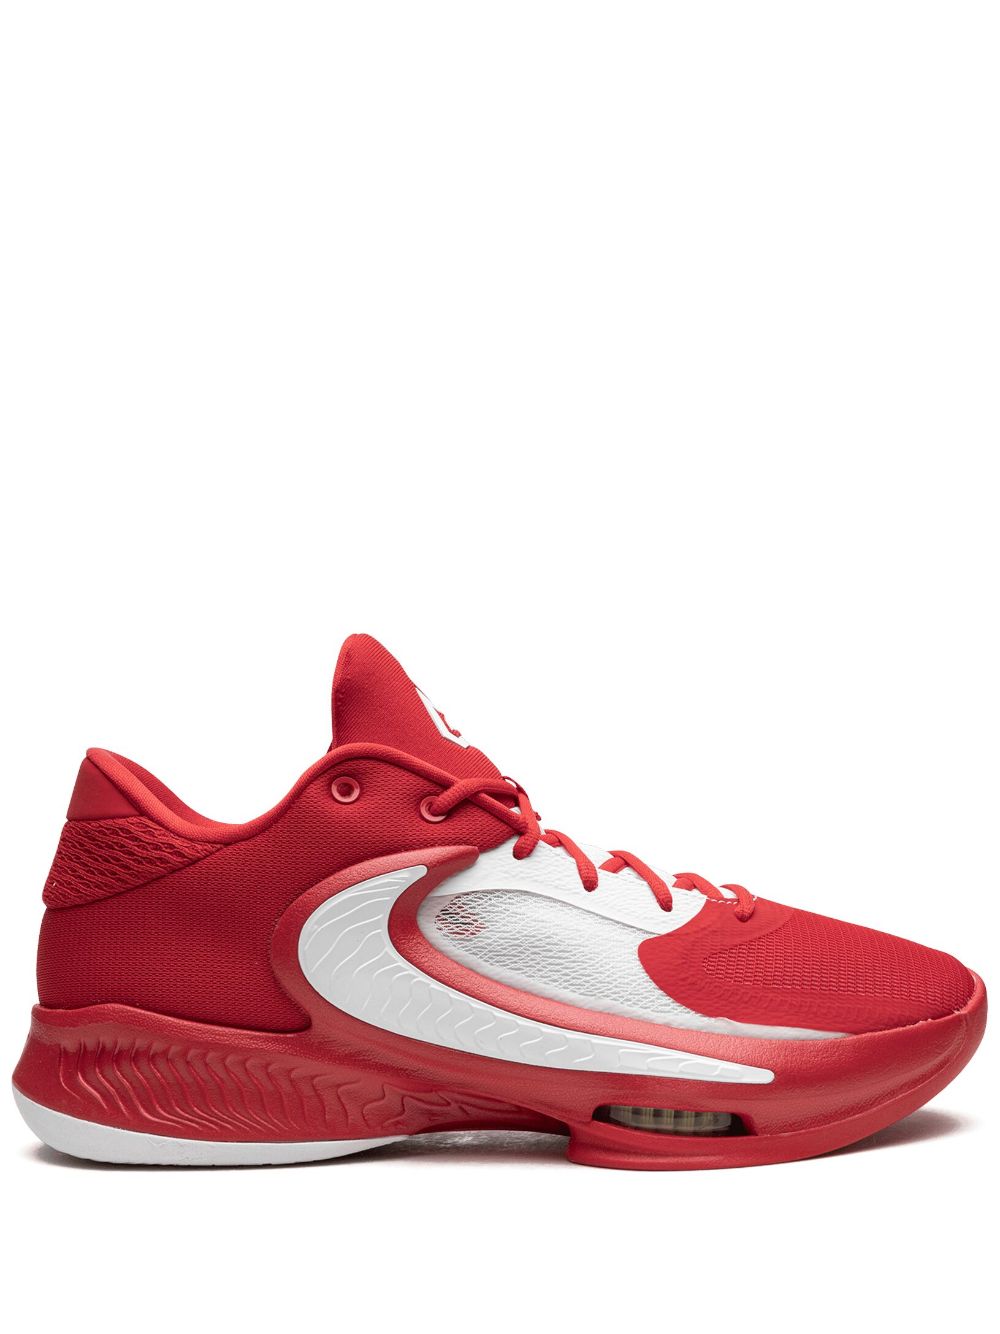 Nike Zoom Freak 4 TB "University Red White" sneakers von Nike